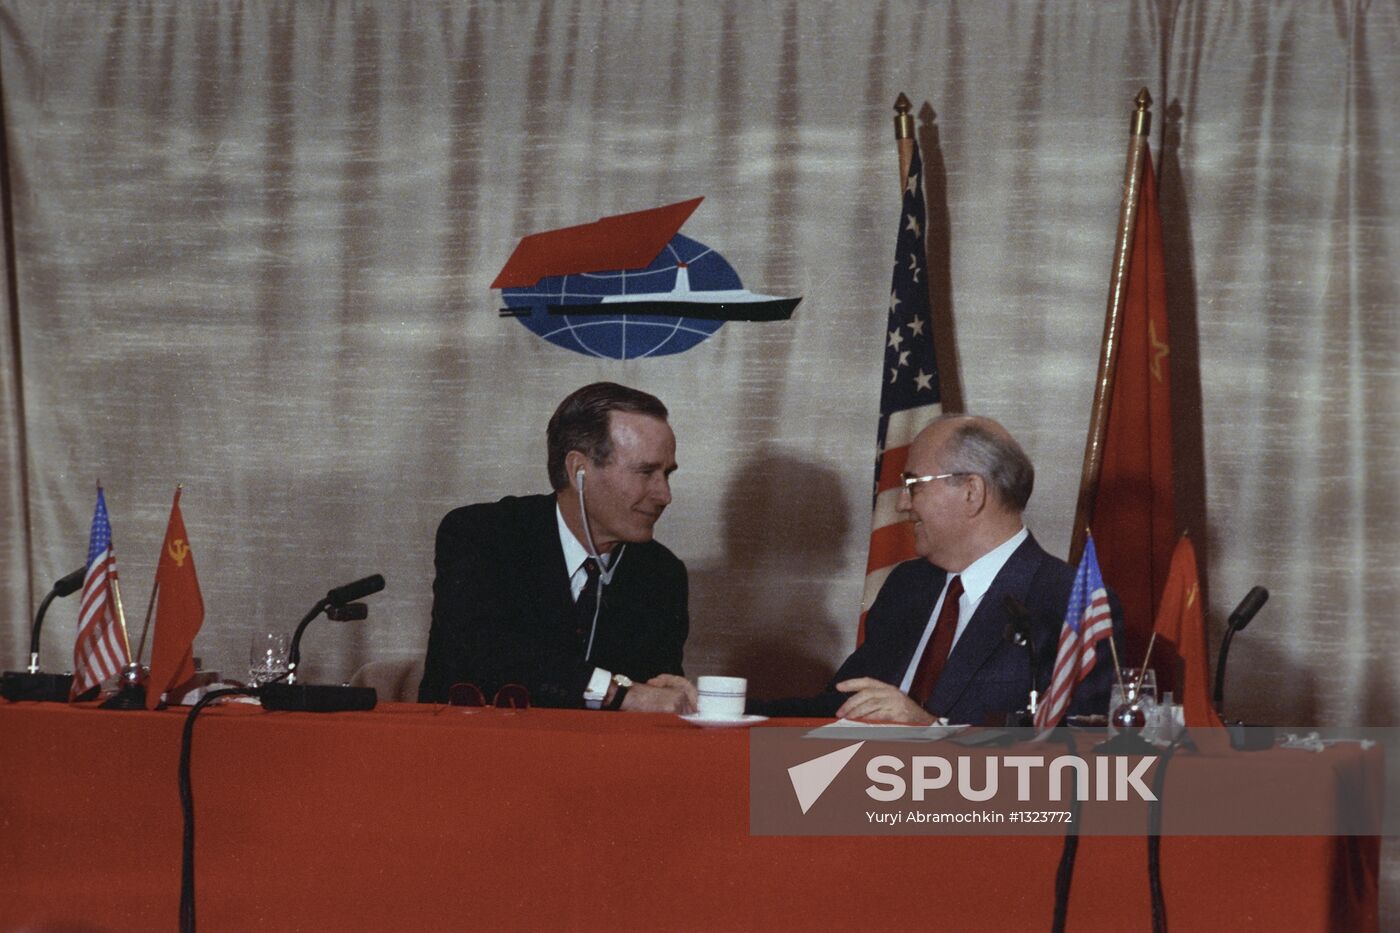 Mikhail Gorbachev and George Bush Senior